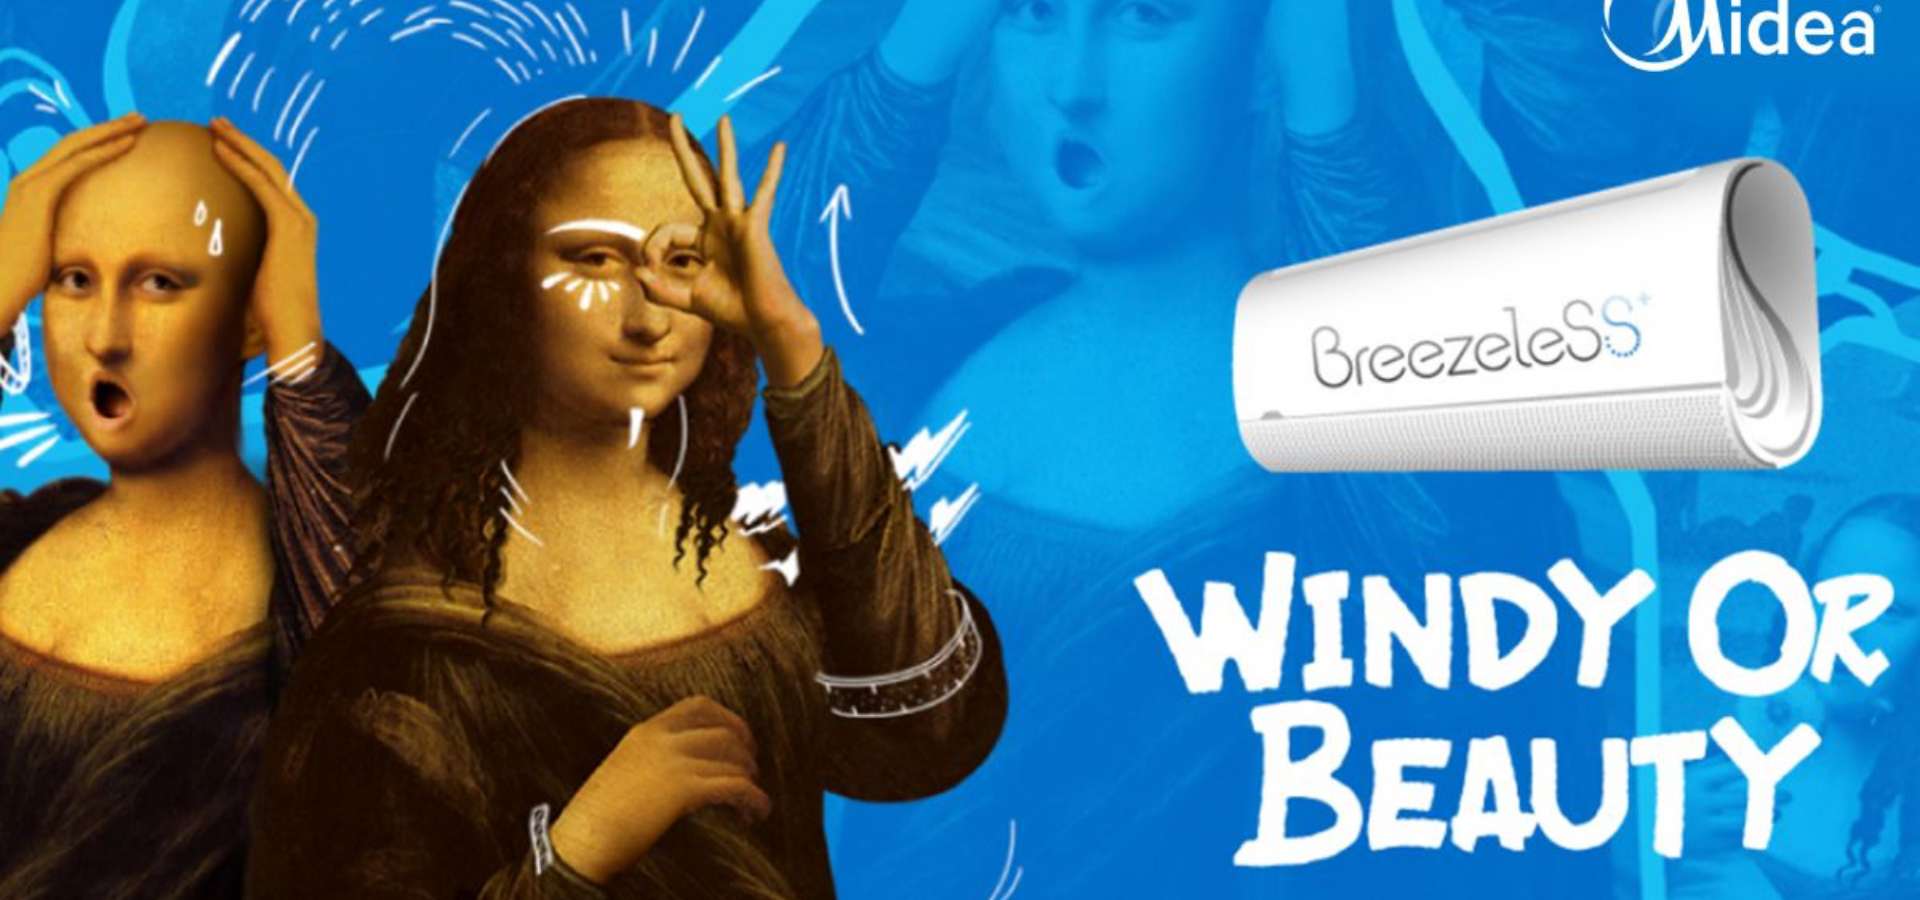 Midea lancia la campagna #Windyorbeauty: così l’air conditioning sbarca su Tik Tok